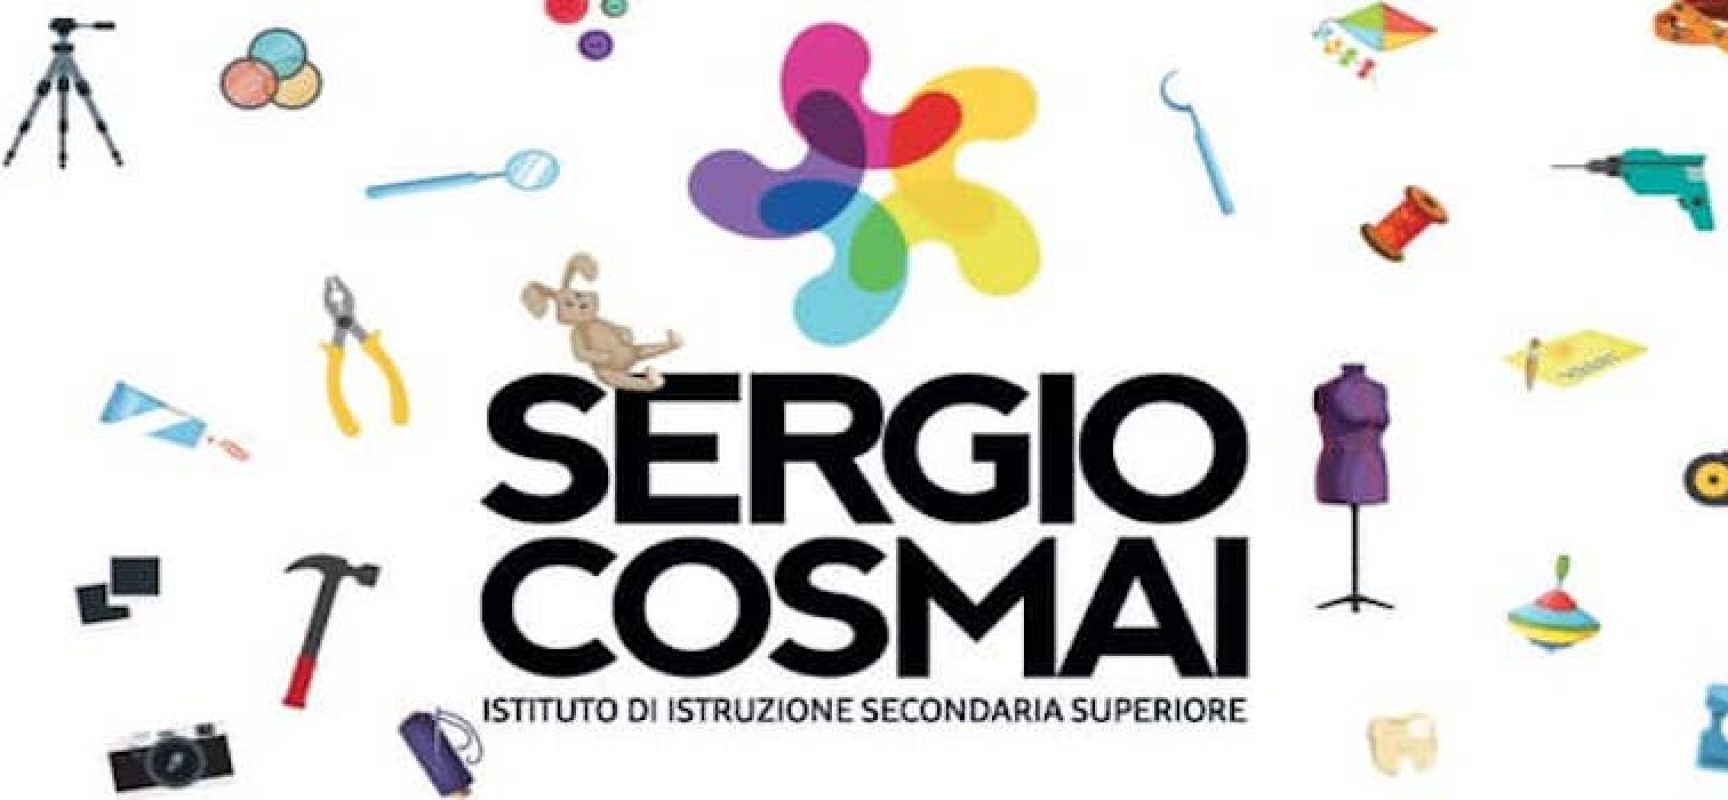 Istituto “Sergio Cosmai” aderisce alla rete delle scuole superiori Erasmus+